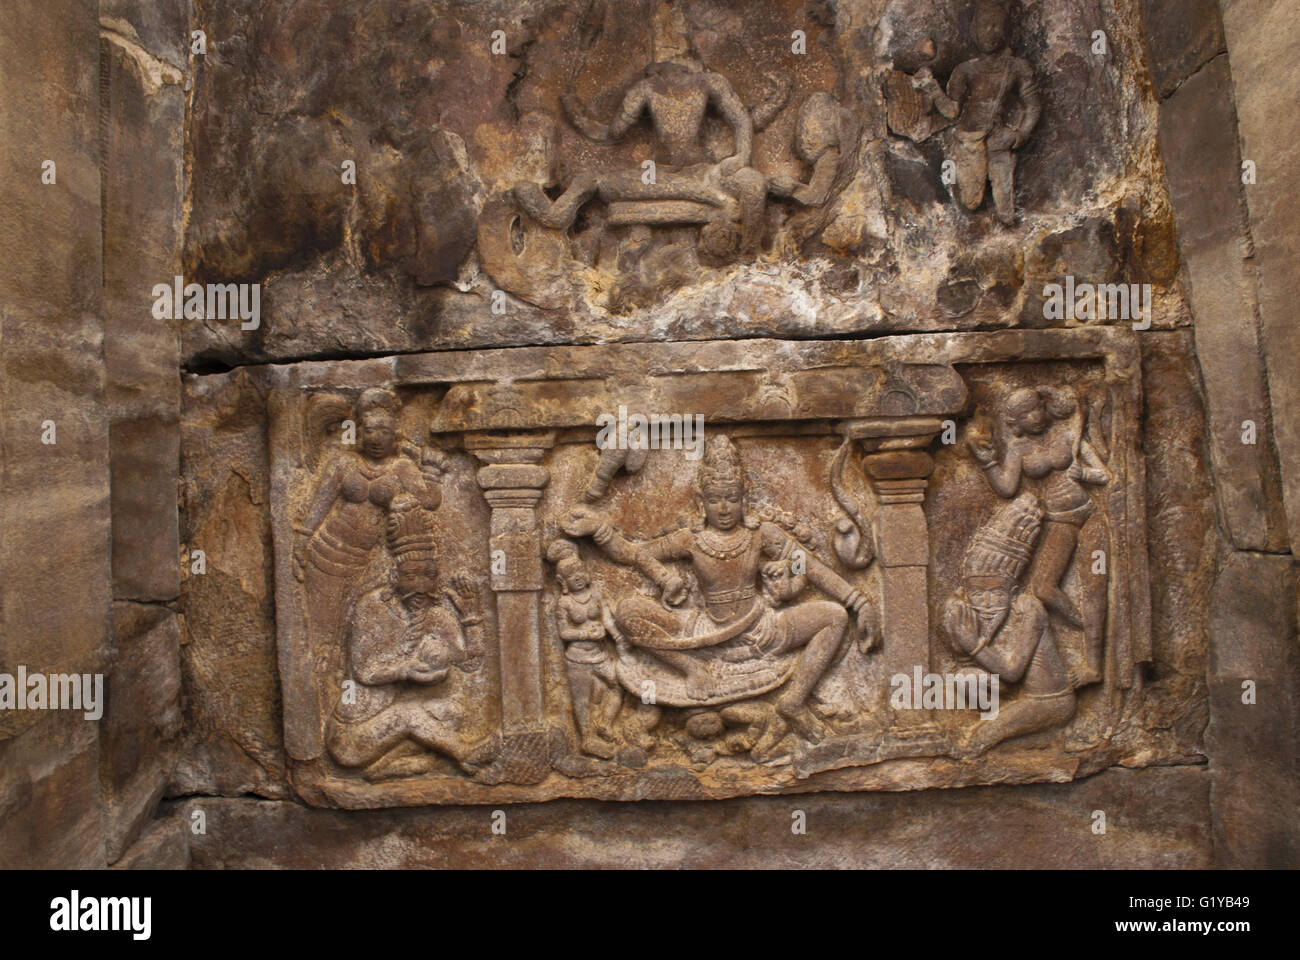 La figure de Shiva et d'autres êtres divins sur le plafond du nord de mukha mandapa, temple de Virupaksha, Pattadakal , Karnataka, Inde Banque D'Images